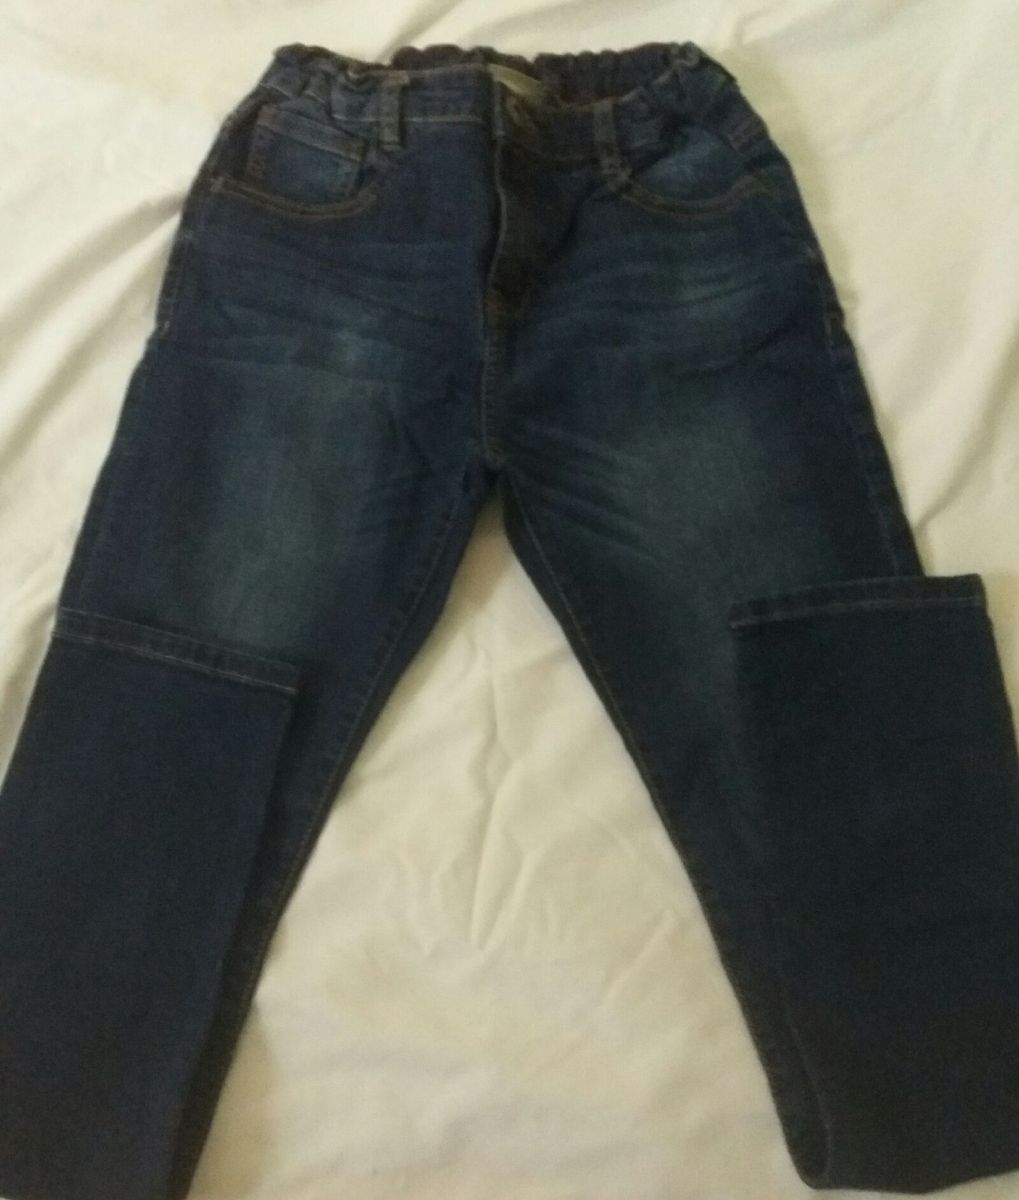 calça jeans juvenil masculina